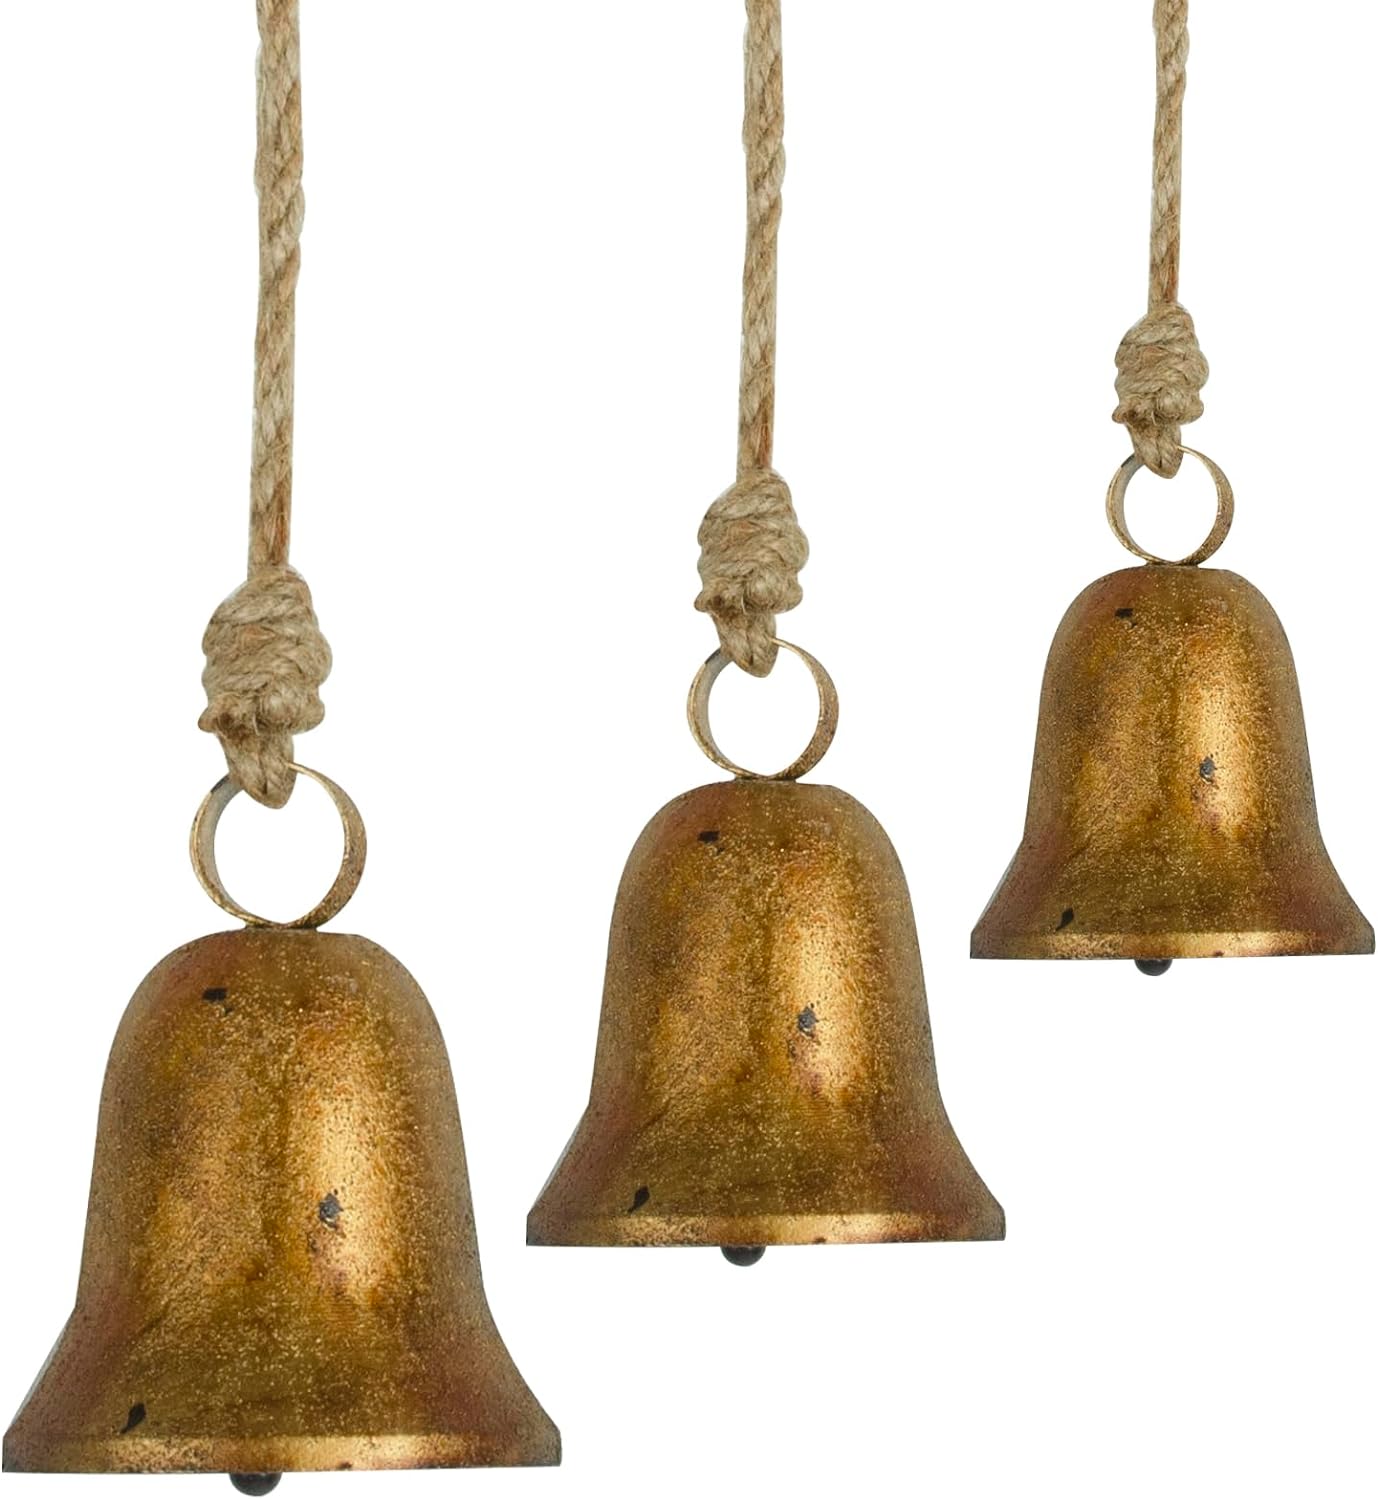 Bell, Door Decor Bells, Christmas Bells, Decorative Bells, Vintage Handmade and Rustic Lucky Christmas Bells, Large Gold Cow Bells Christmas Decor